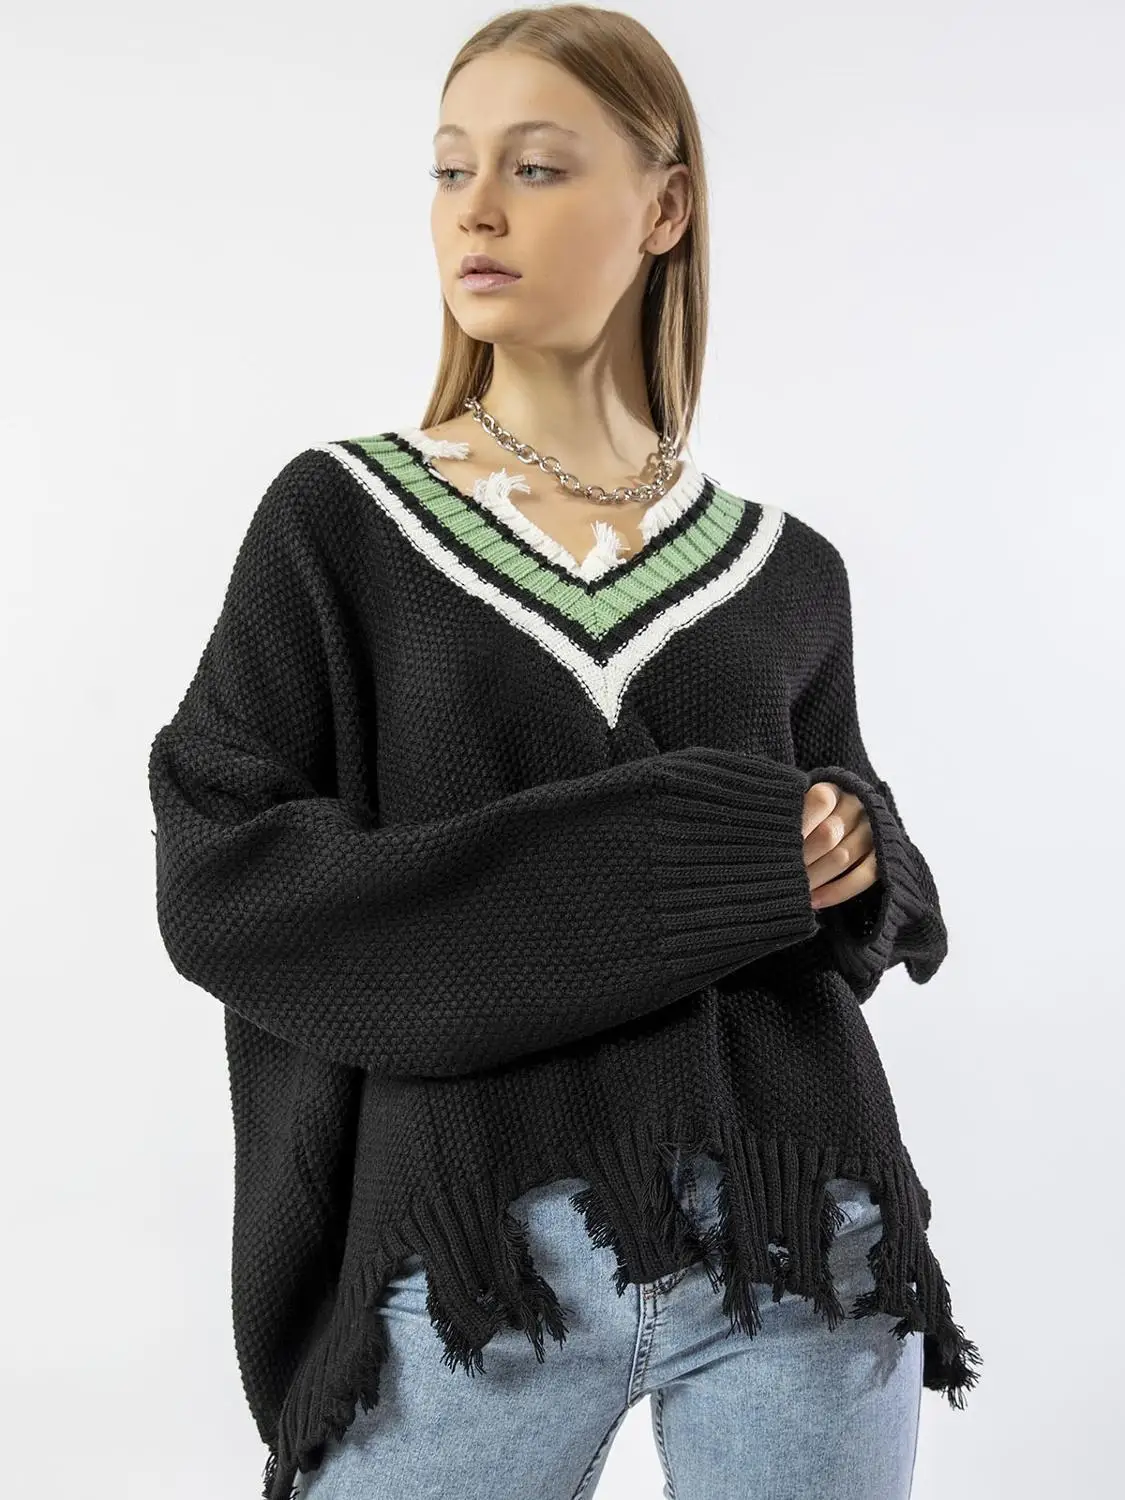 NE'FASH Women Sweater Fringe Pullover V Neck Stylish Long Sleeve Autumn Winter Ladies Fashion New Season